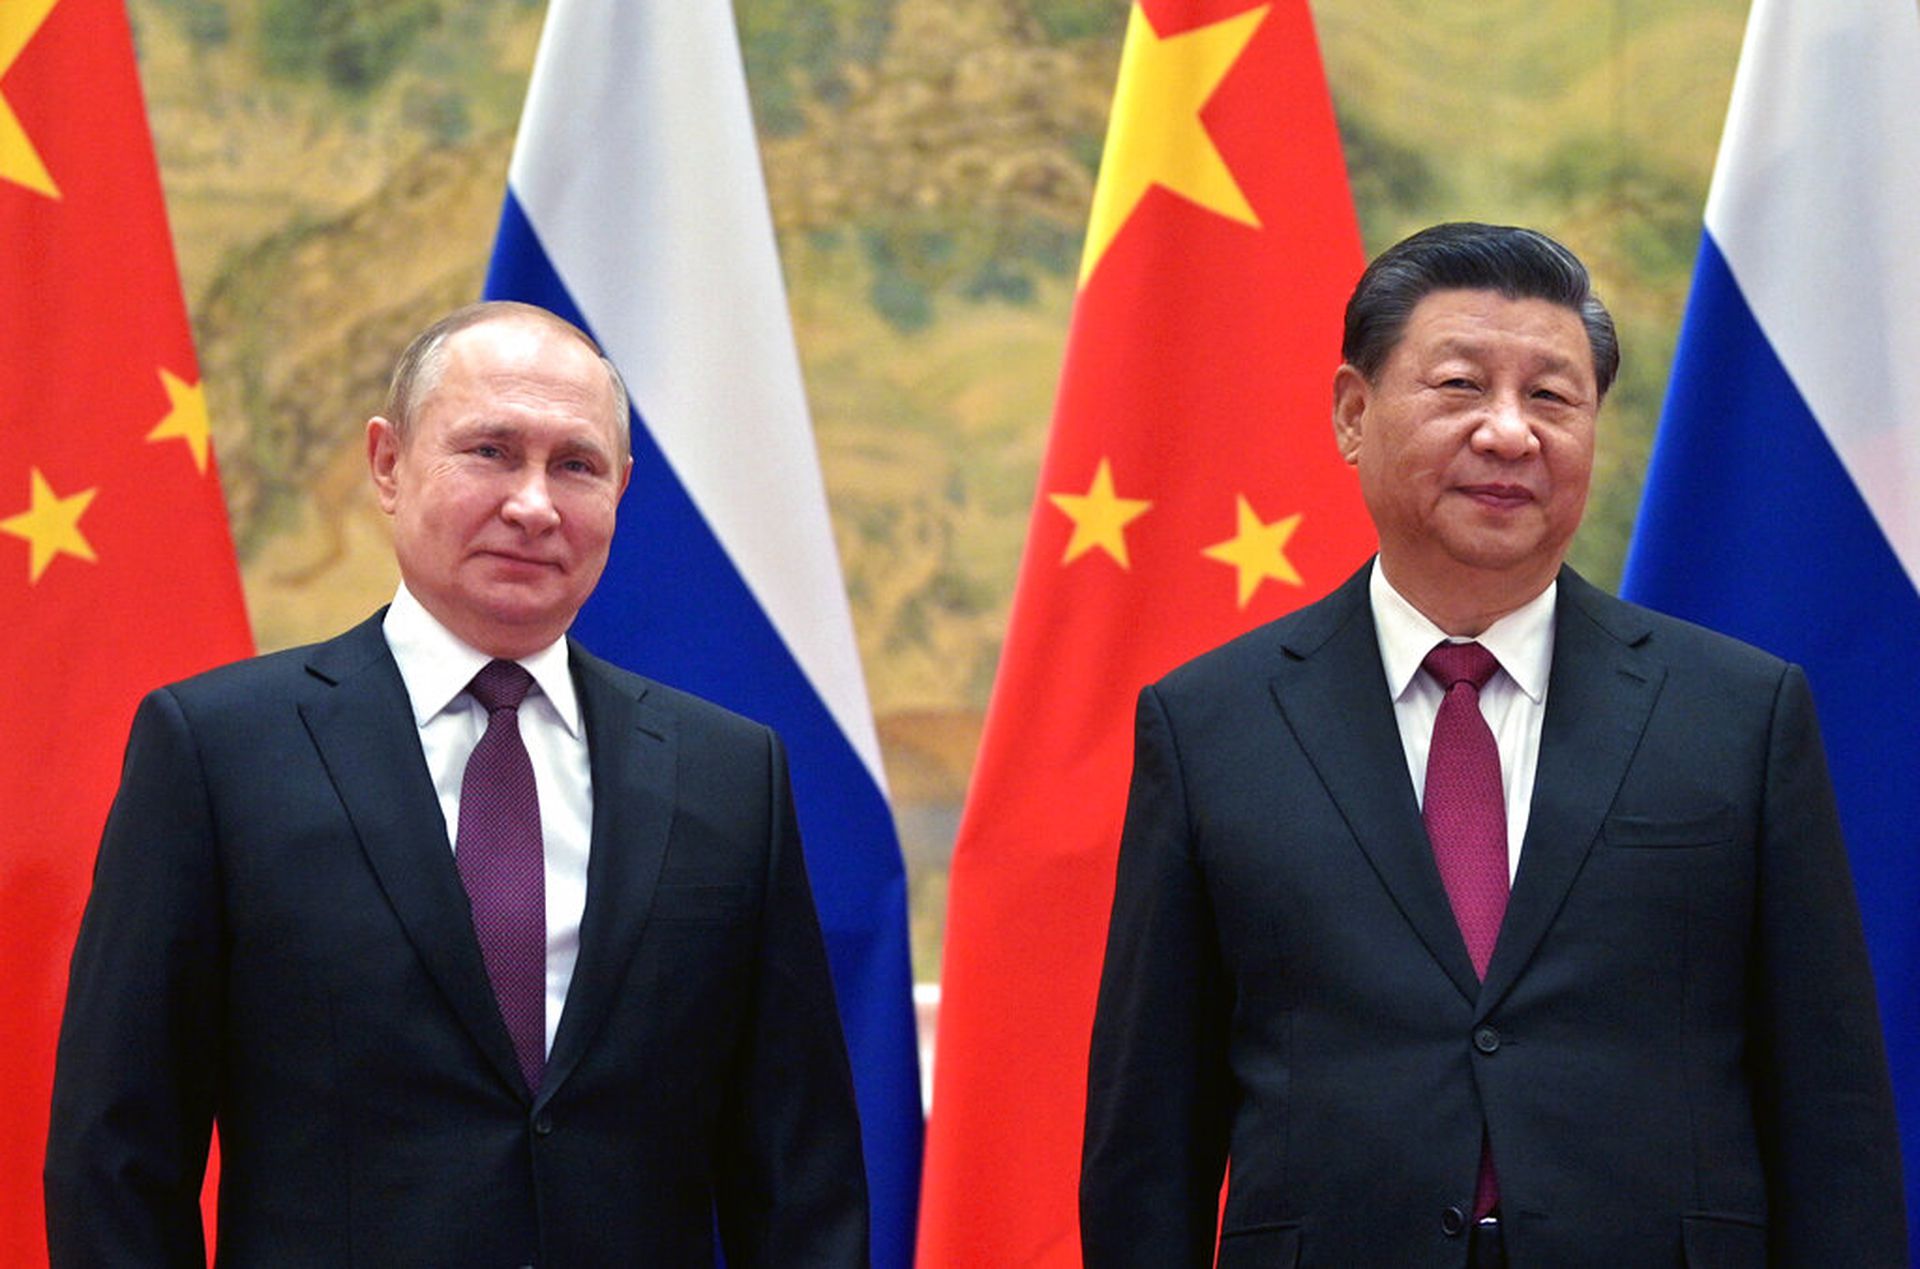 中俄签署联合声明 深化双边关系_凤凰网视频_凤凰网